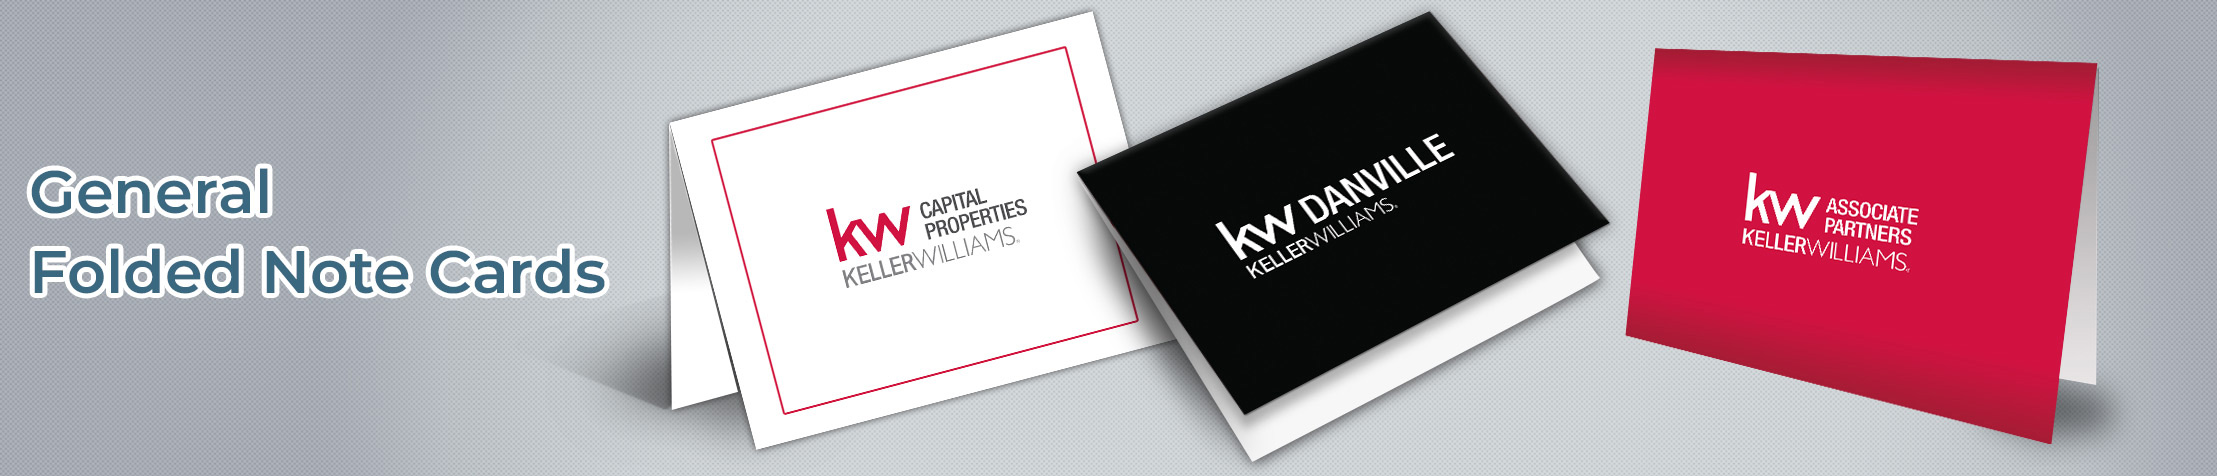 Keller Williams Real Estate General Folded Note Cards - KW approved vendor note card stationery | BestPrintBuy.com